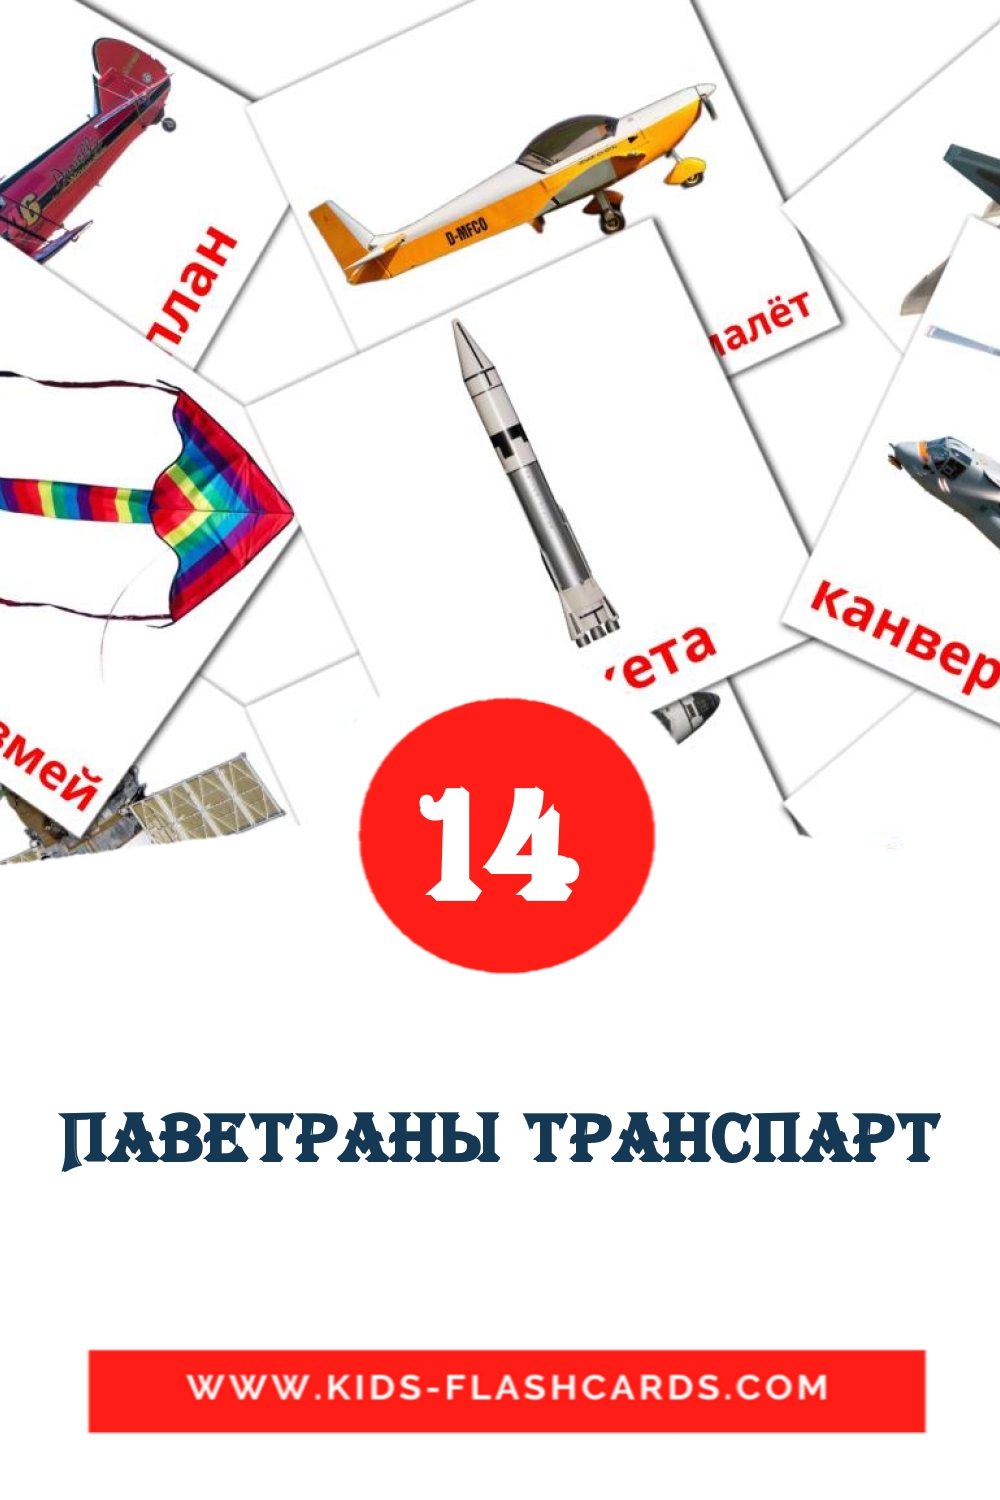 14 tarjetas didacticas de Паветраны транспарт para el jardín de infancia en bielorruso